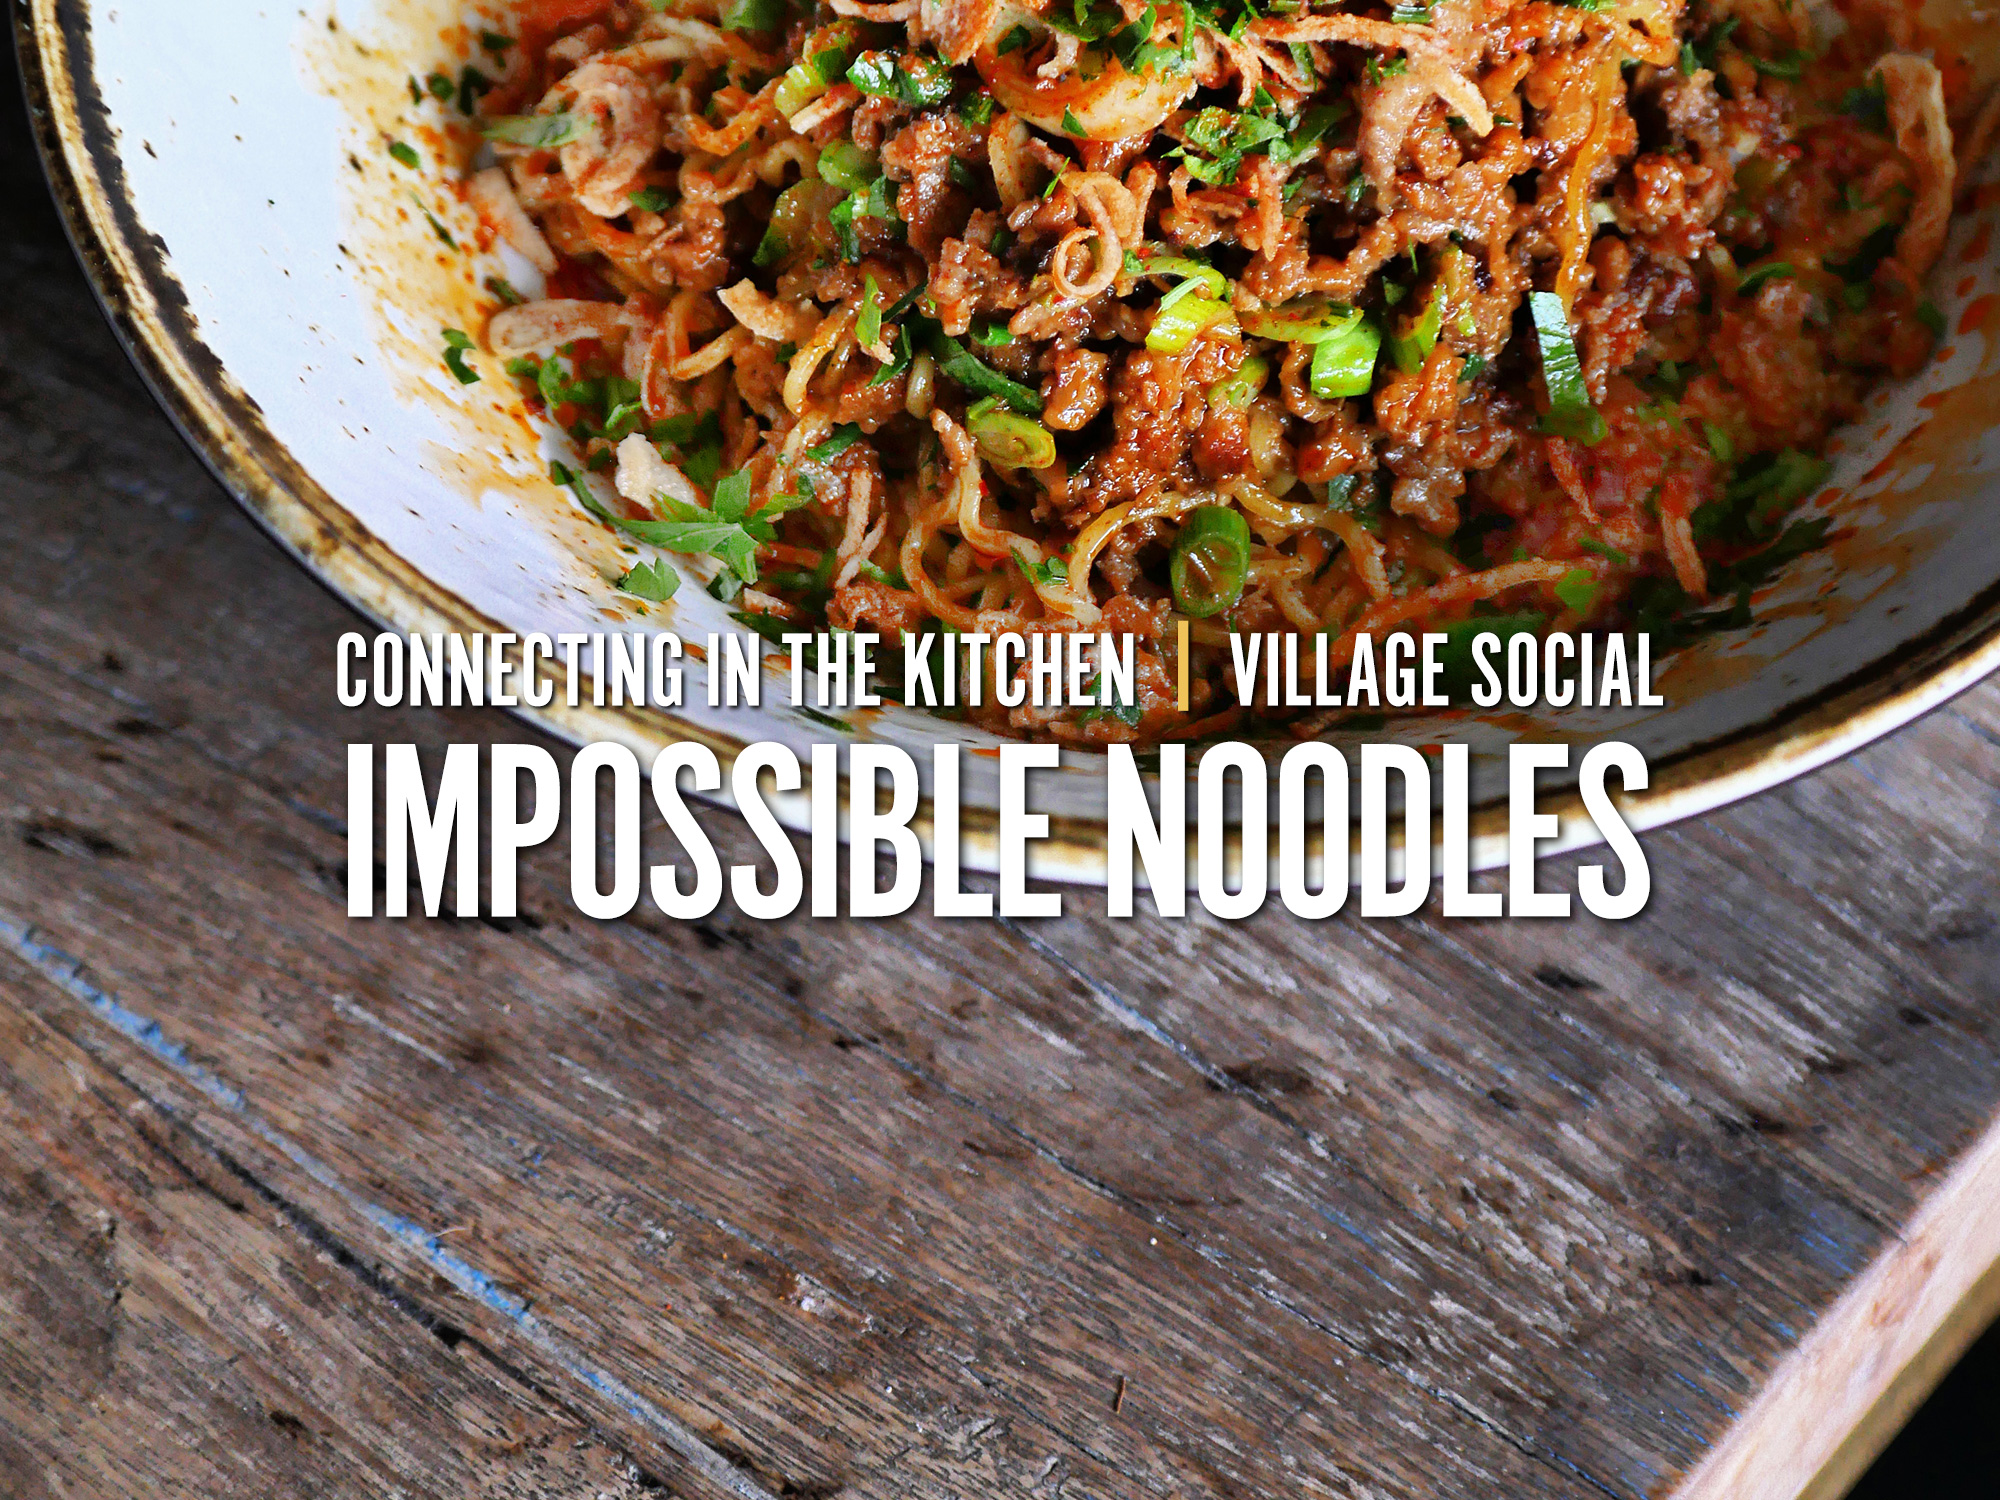 Impossible Noodles